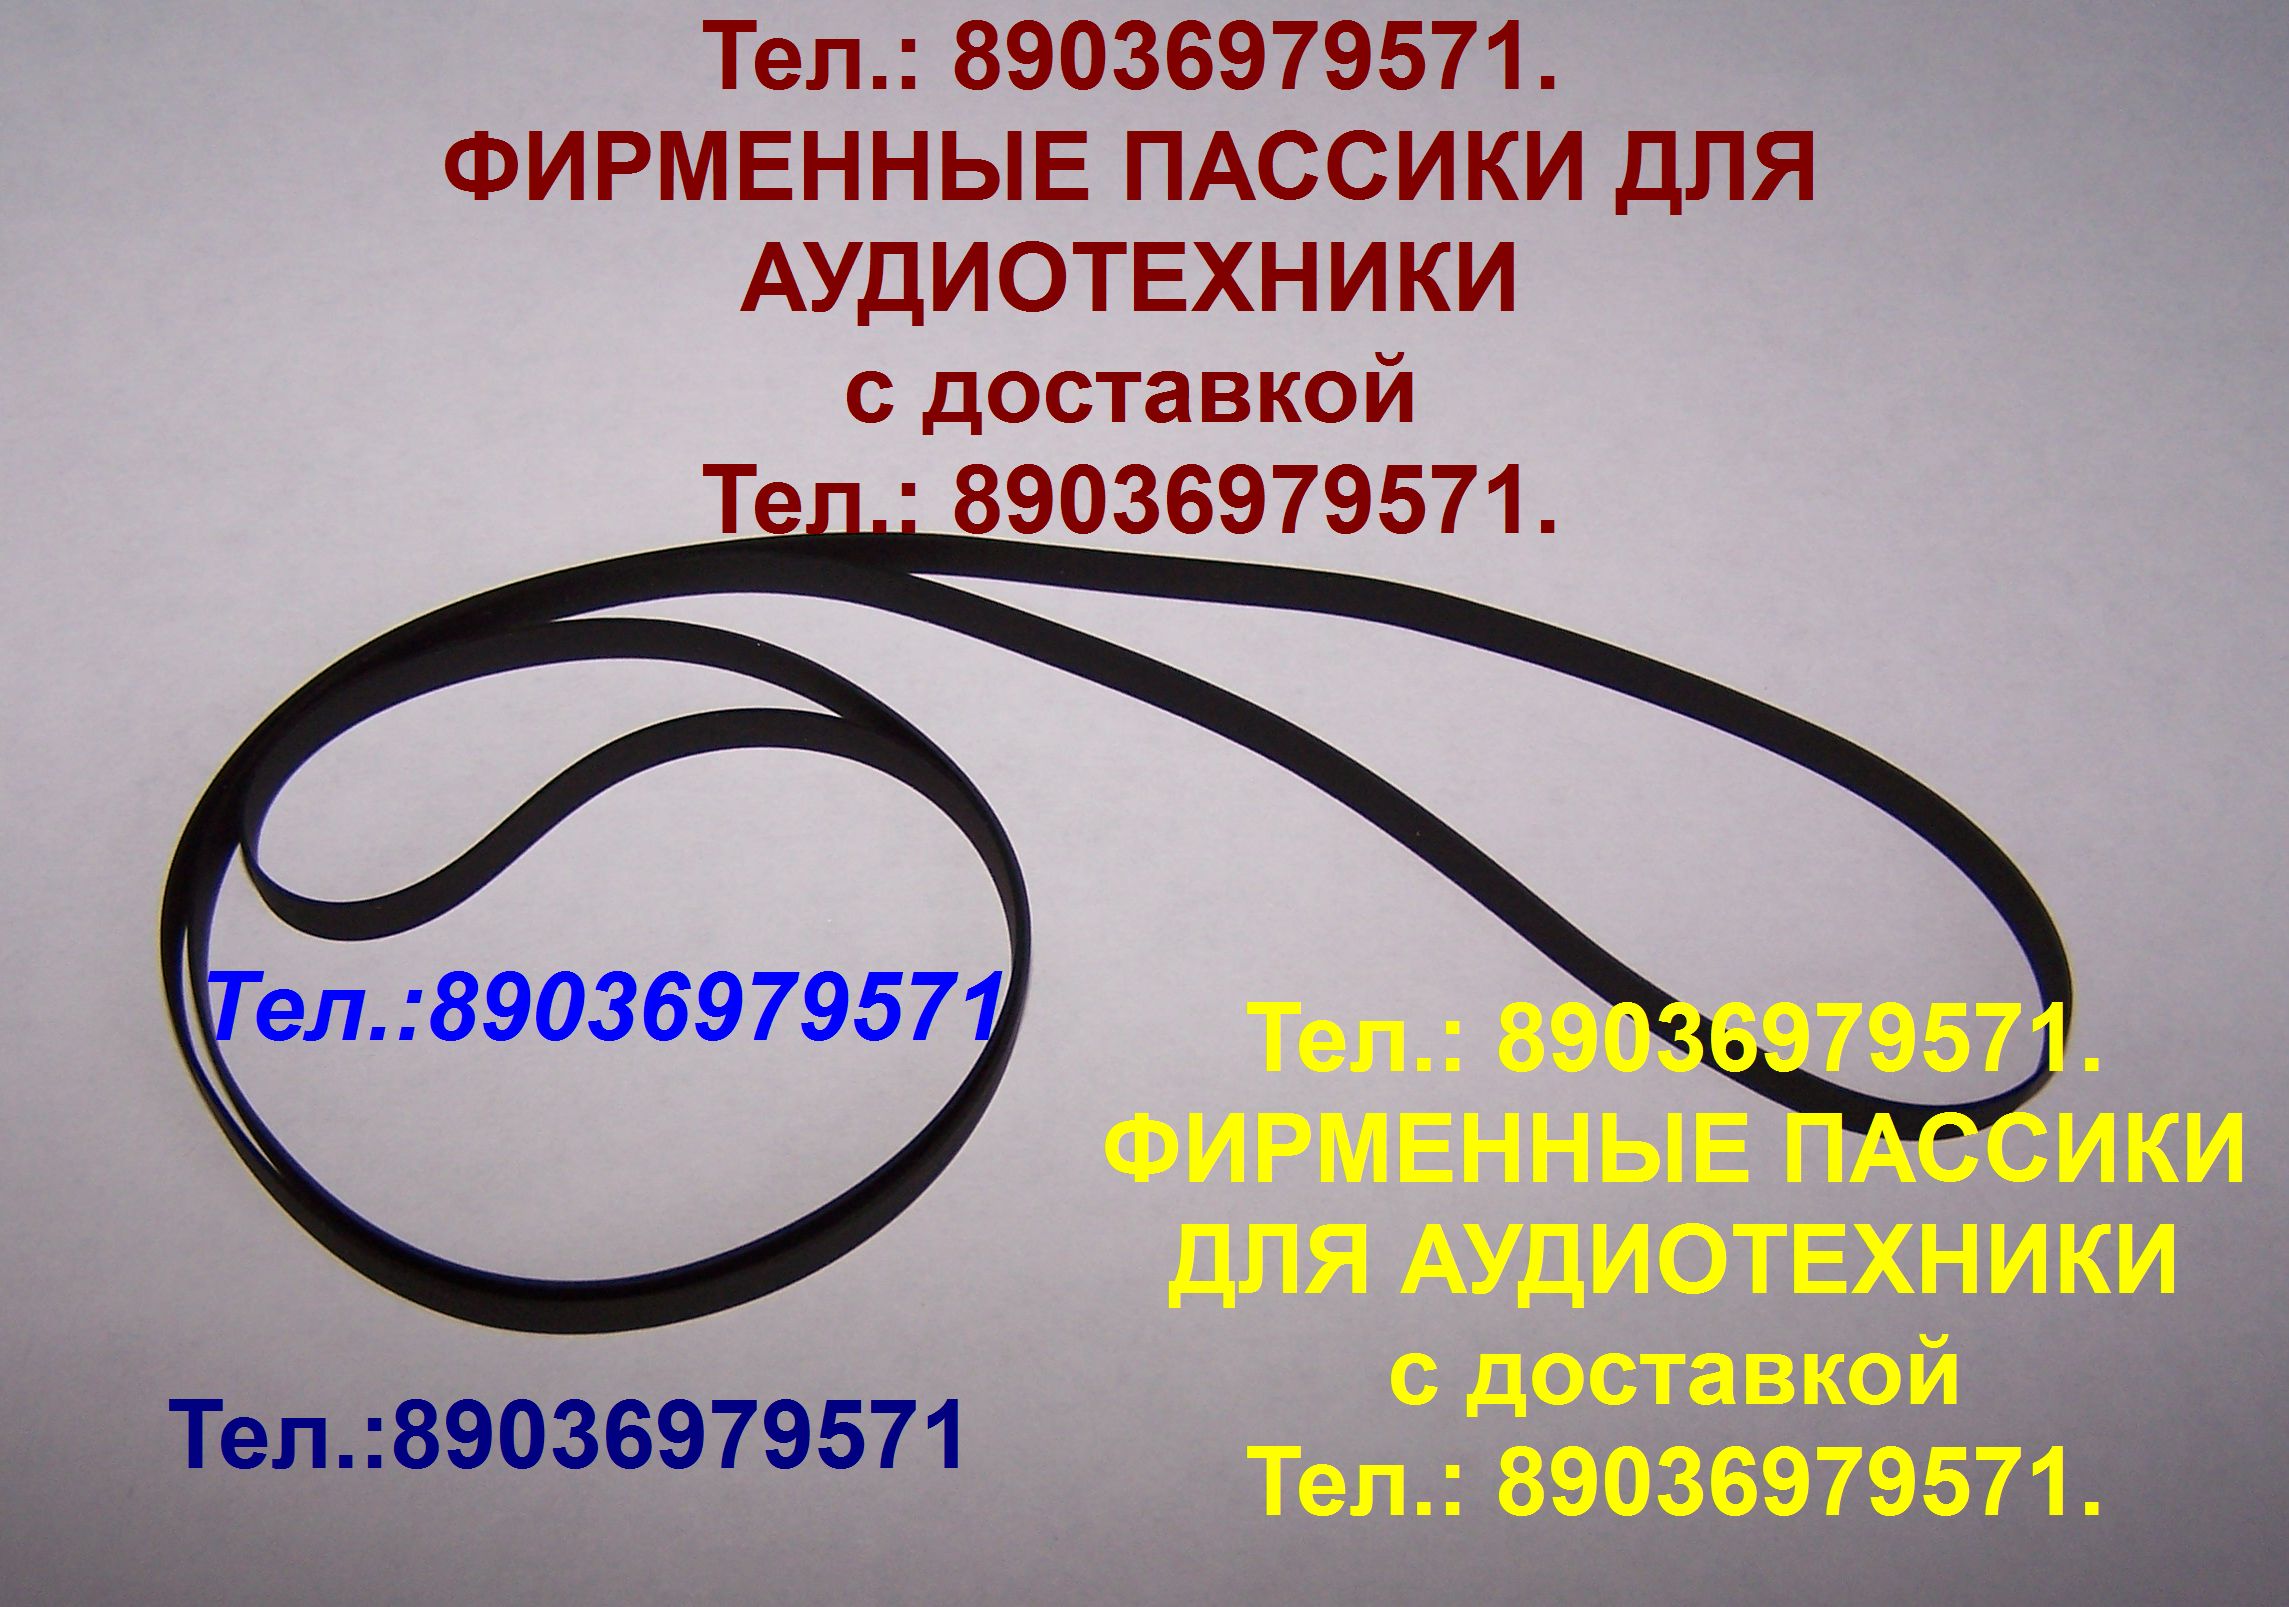 Пассик для Sharp SG-1 пасик ремень Шарп SG1 в городе Москва, фото 1, телефон продавца: +7 (903) 697-95-71